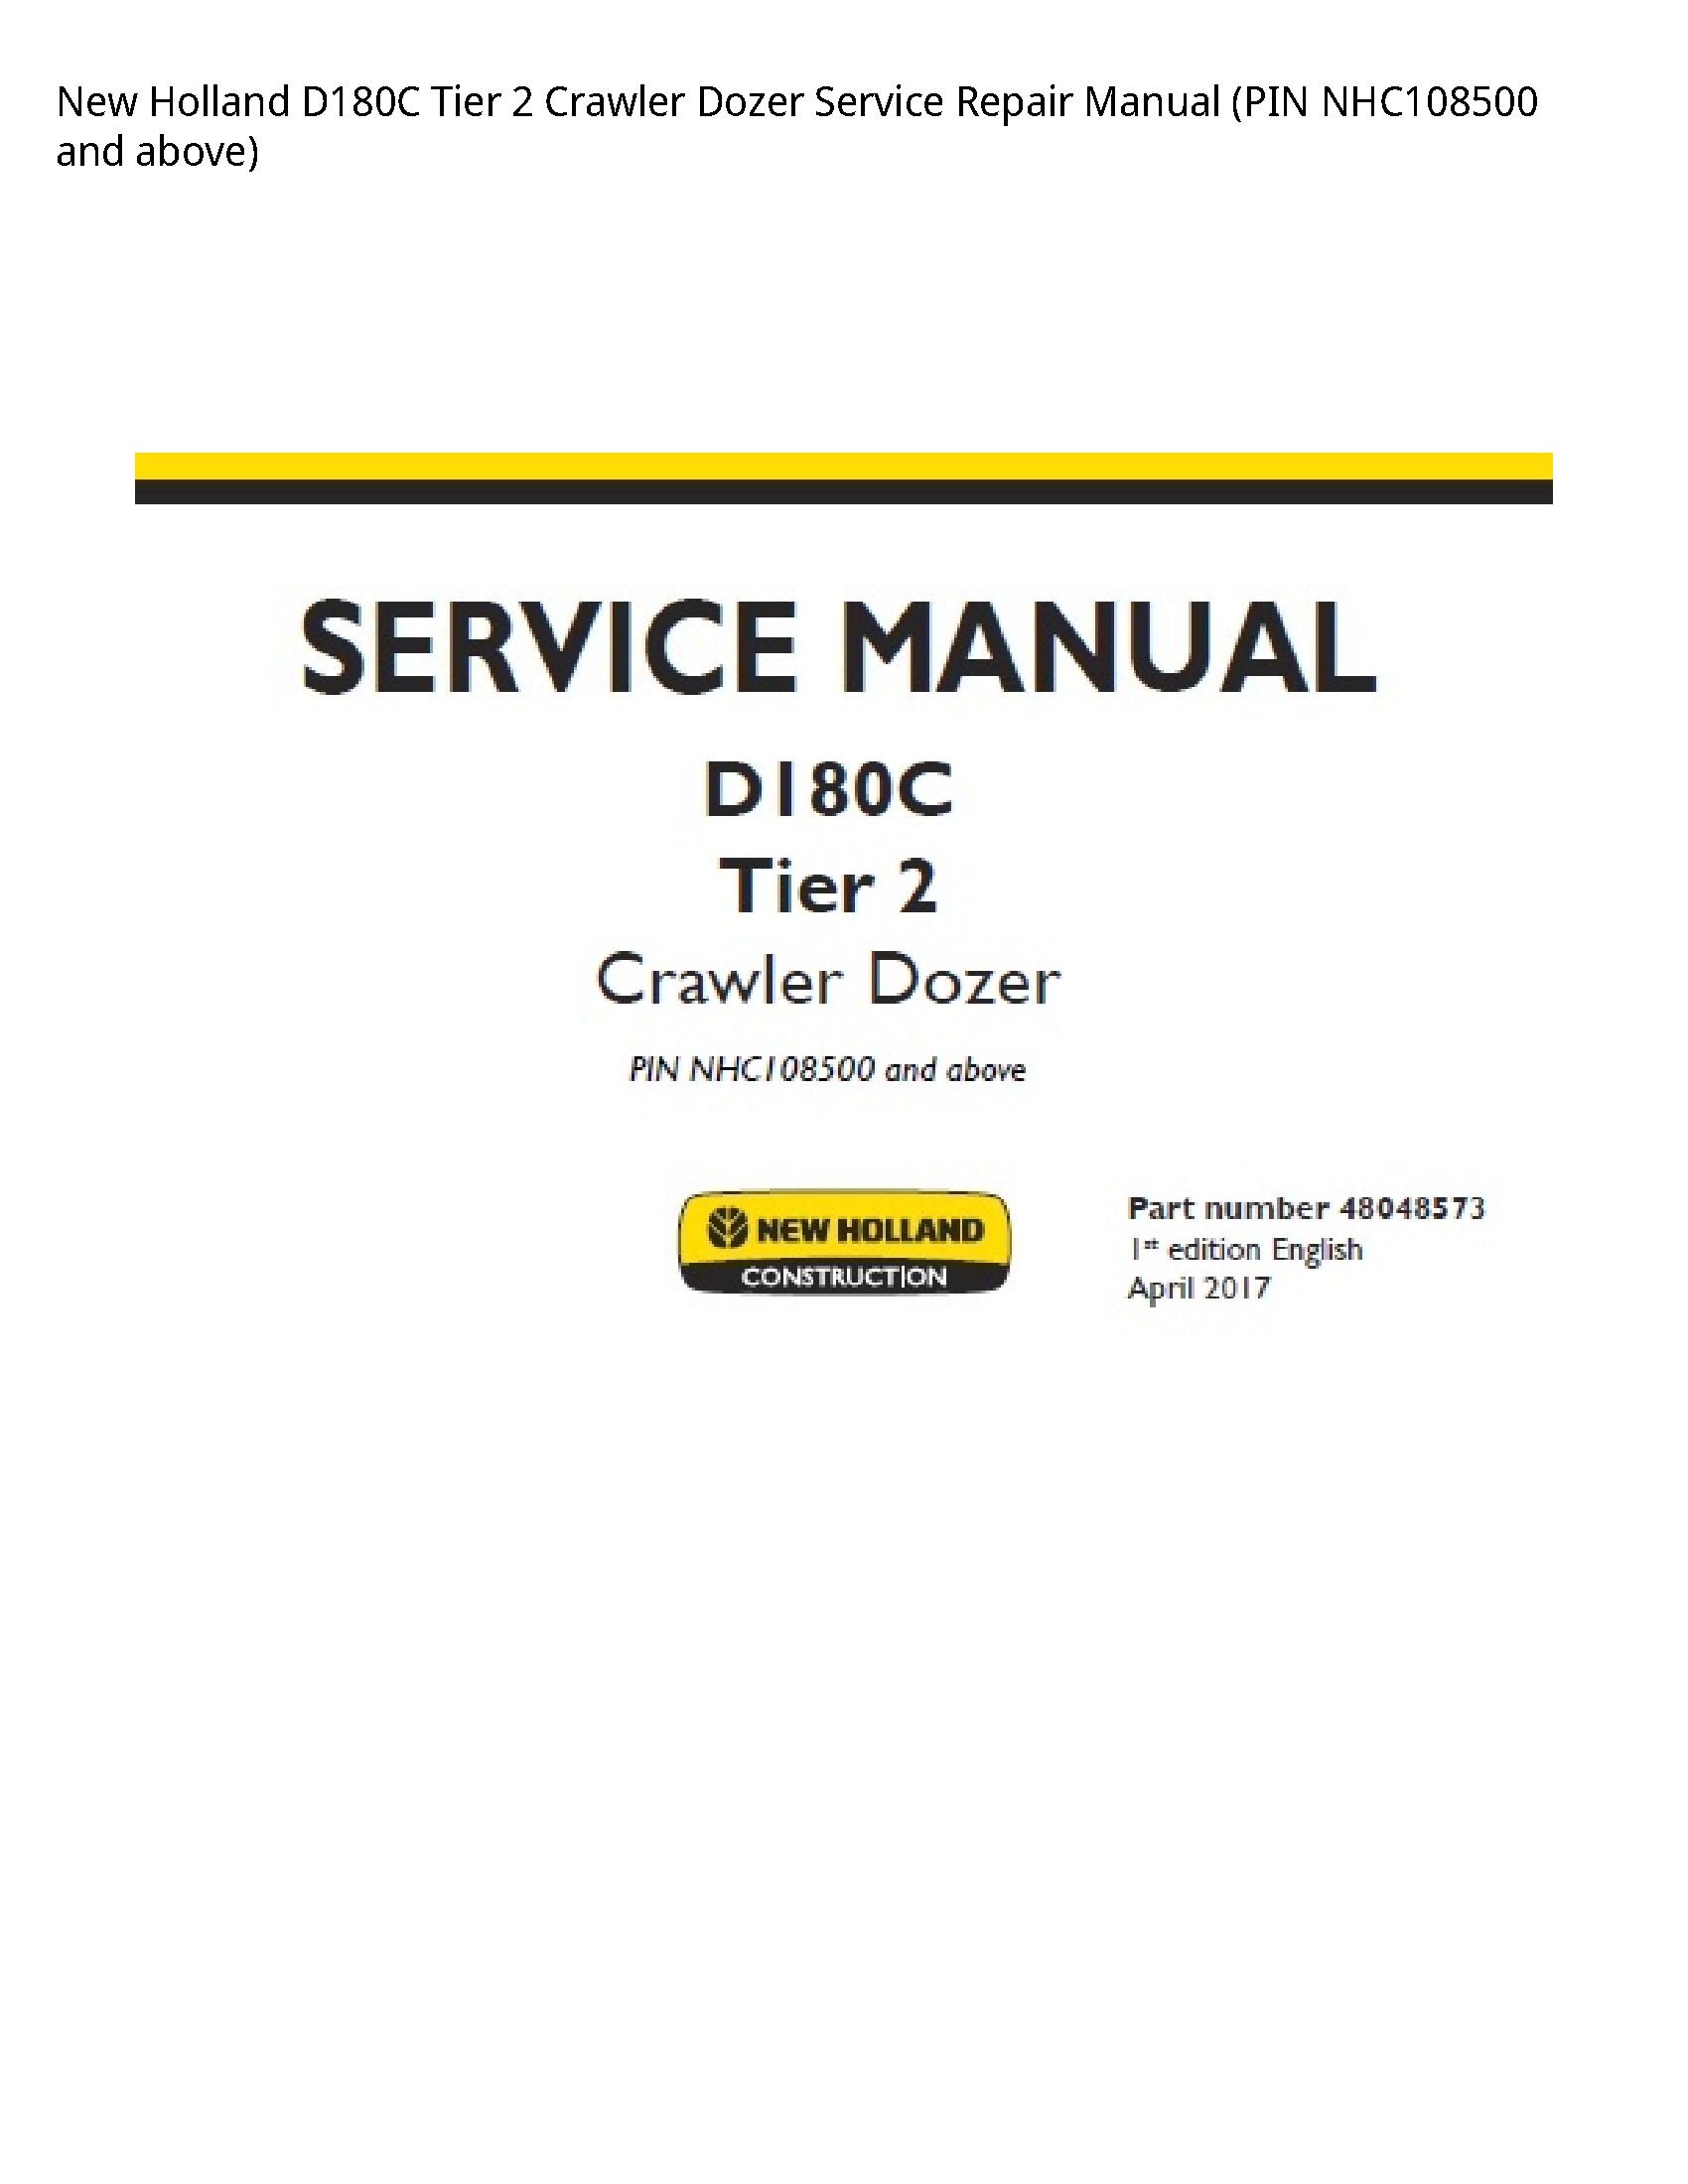 New Holland D180C Tier Crawler Dozer manual